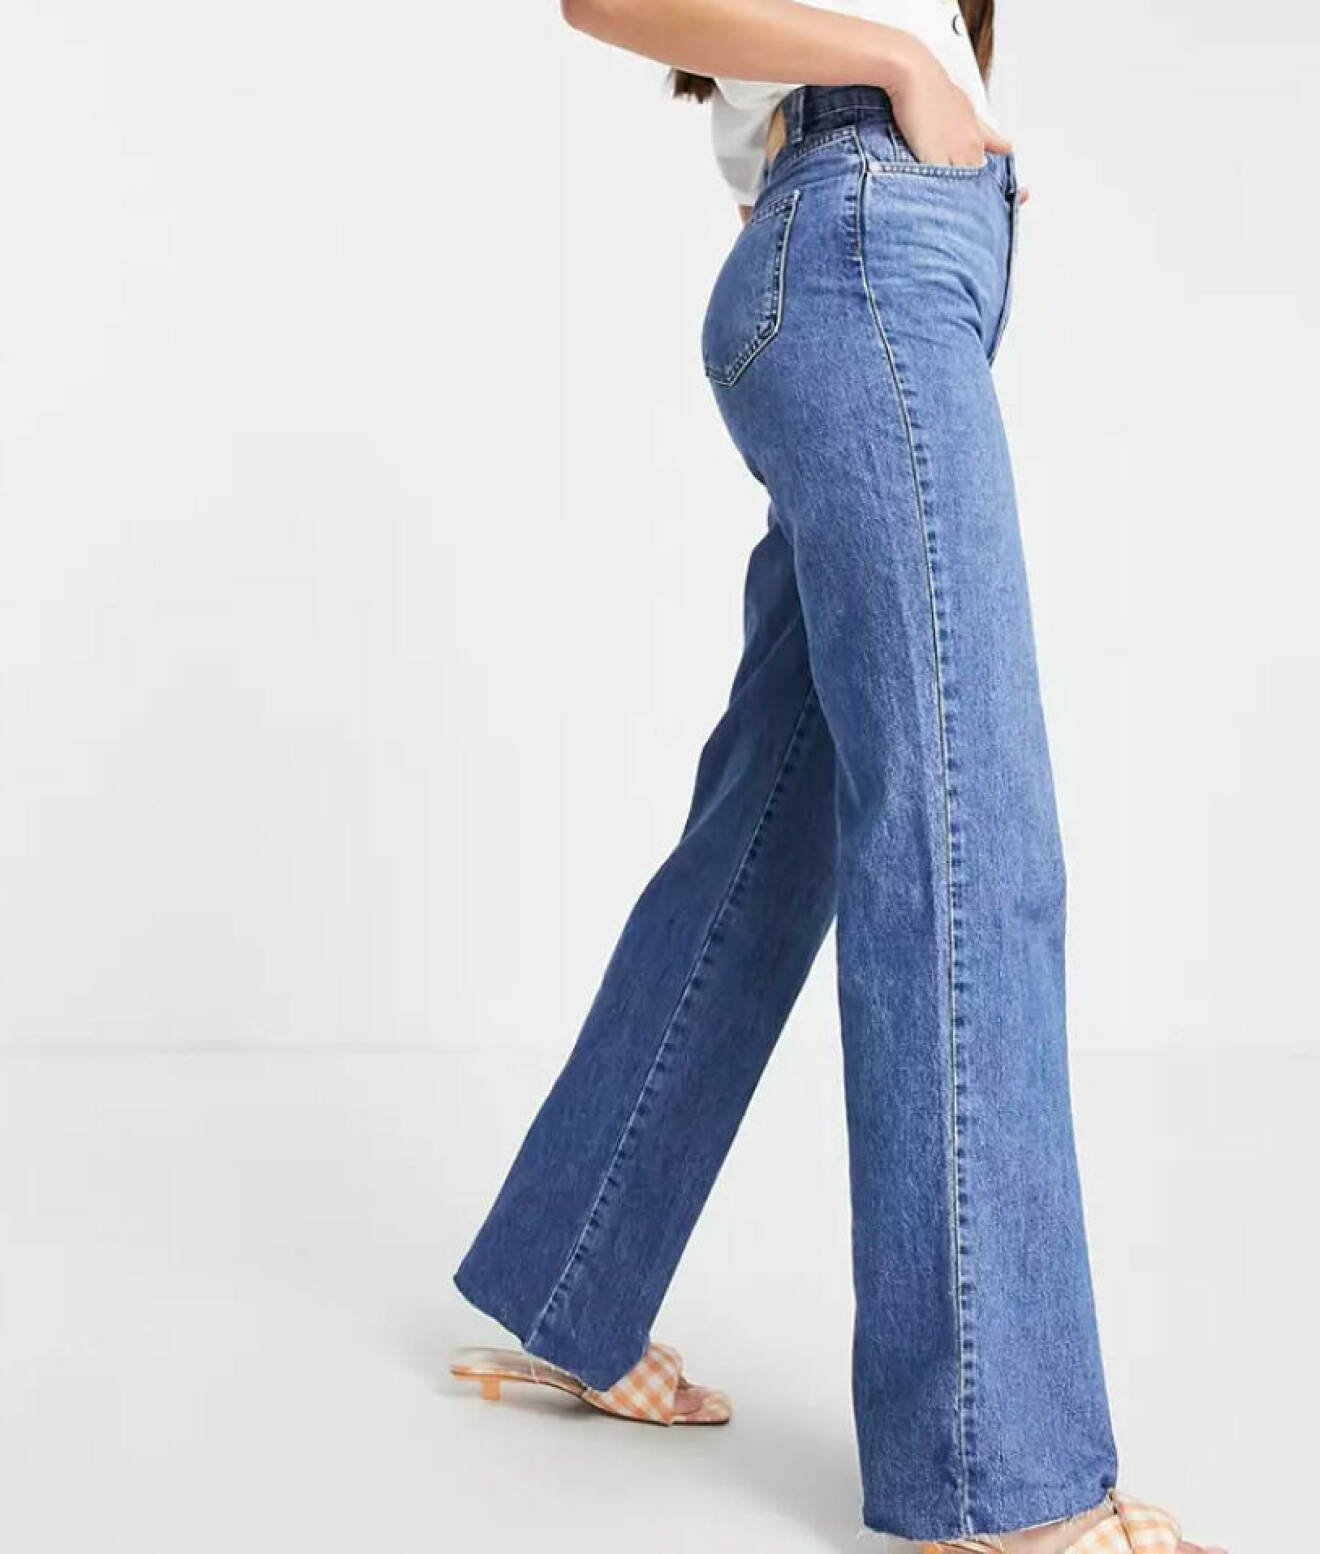 jeans för långa ben